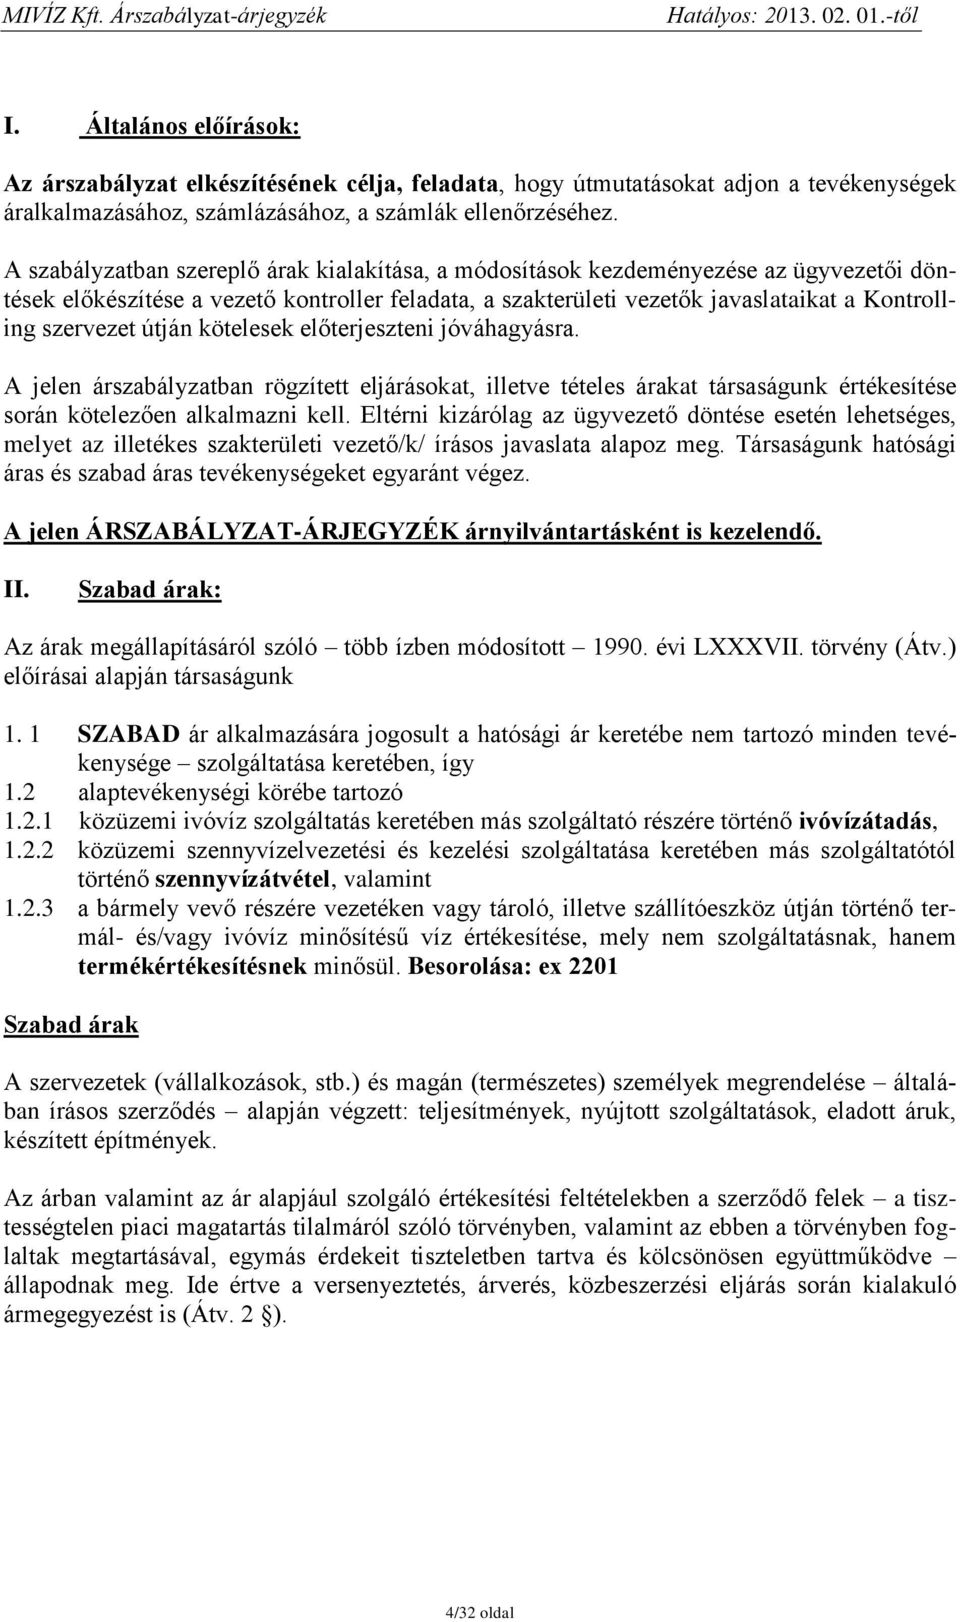 MIVÍZ MISKOLCI VÍZMŰ KFT. - PDF Free Download